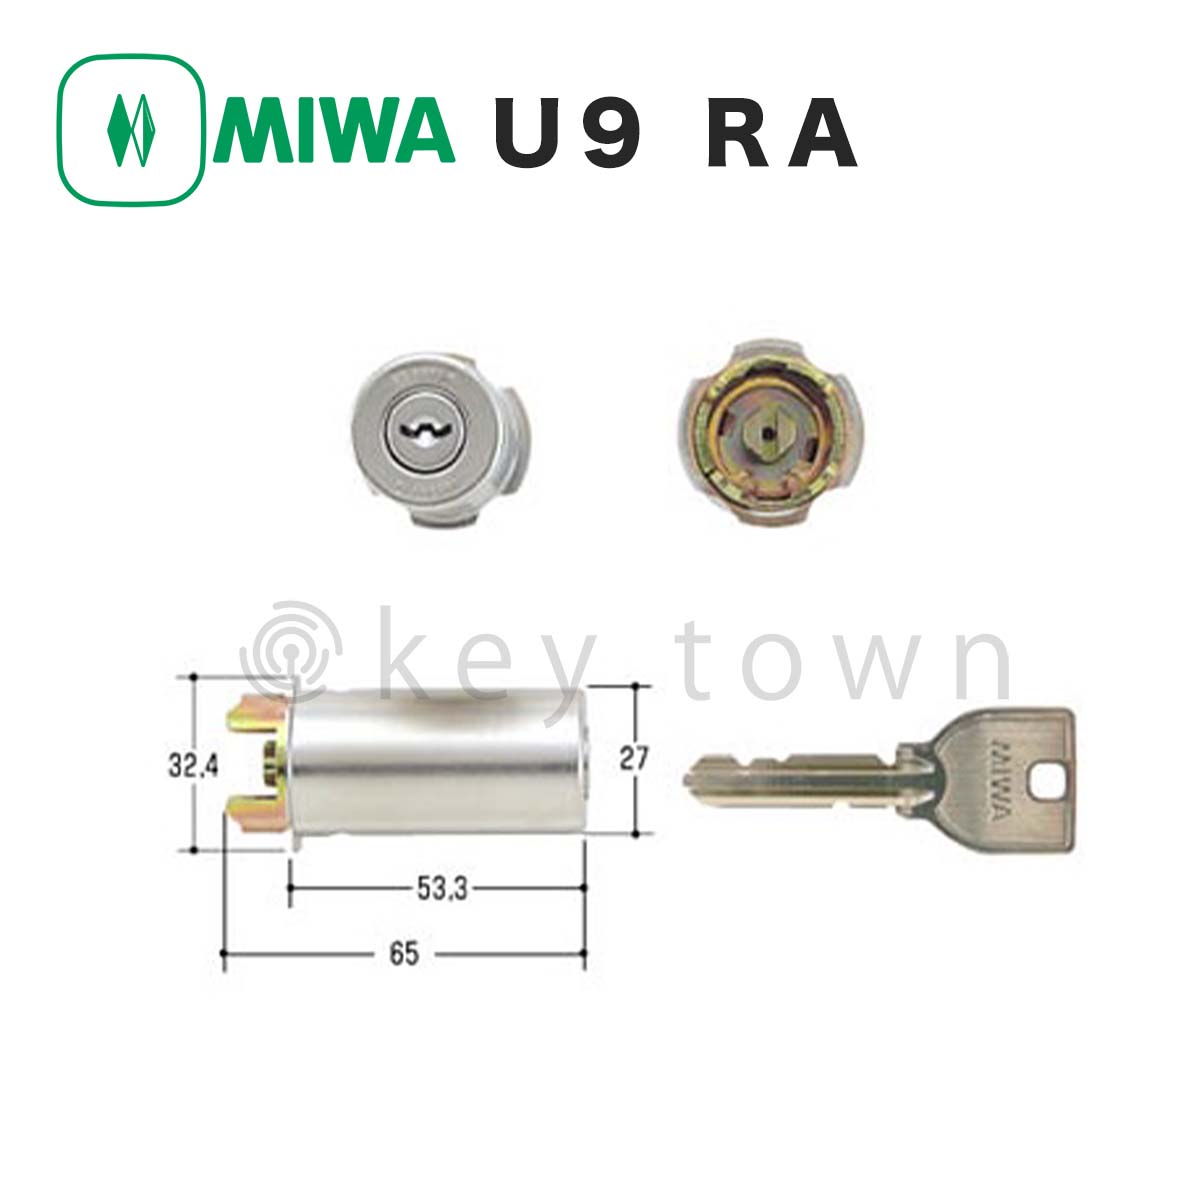 MIWA RAHPC(美和ロック) 面付箱錠 RAHPC(RAタイプ) レバーハンドル型 シルバー 右勝手外開き - 3